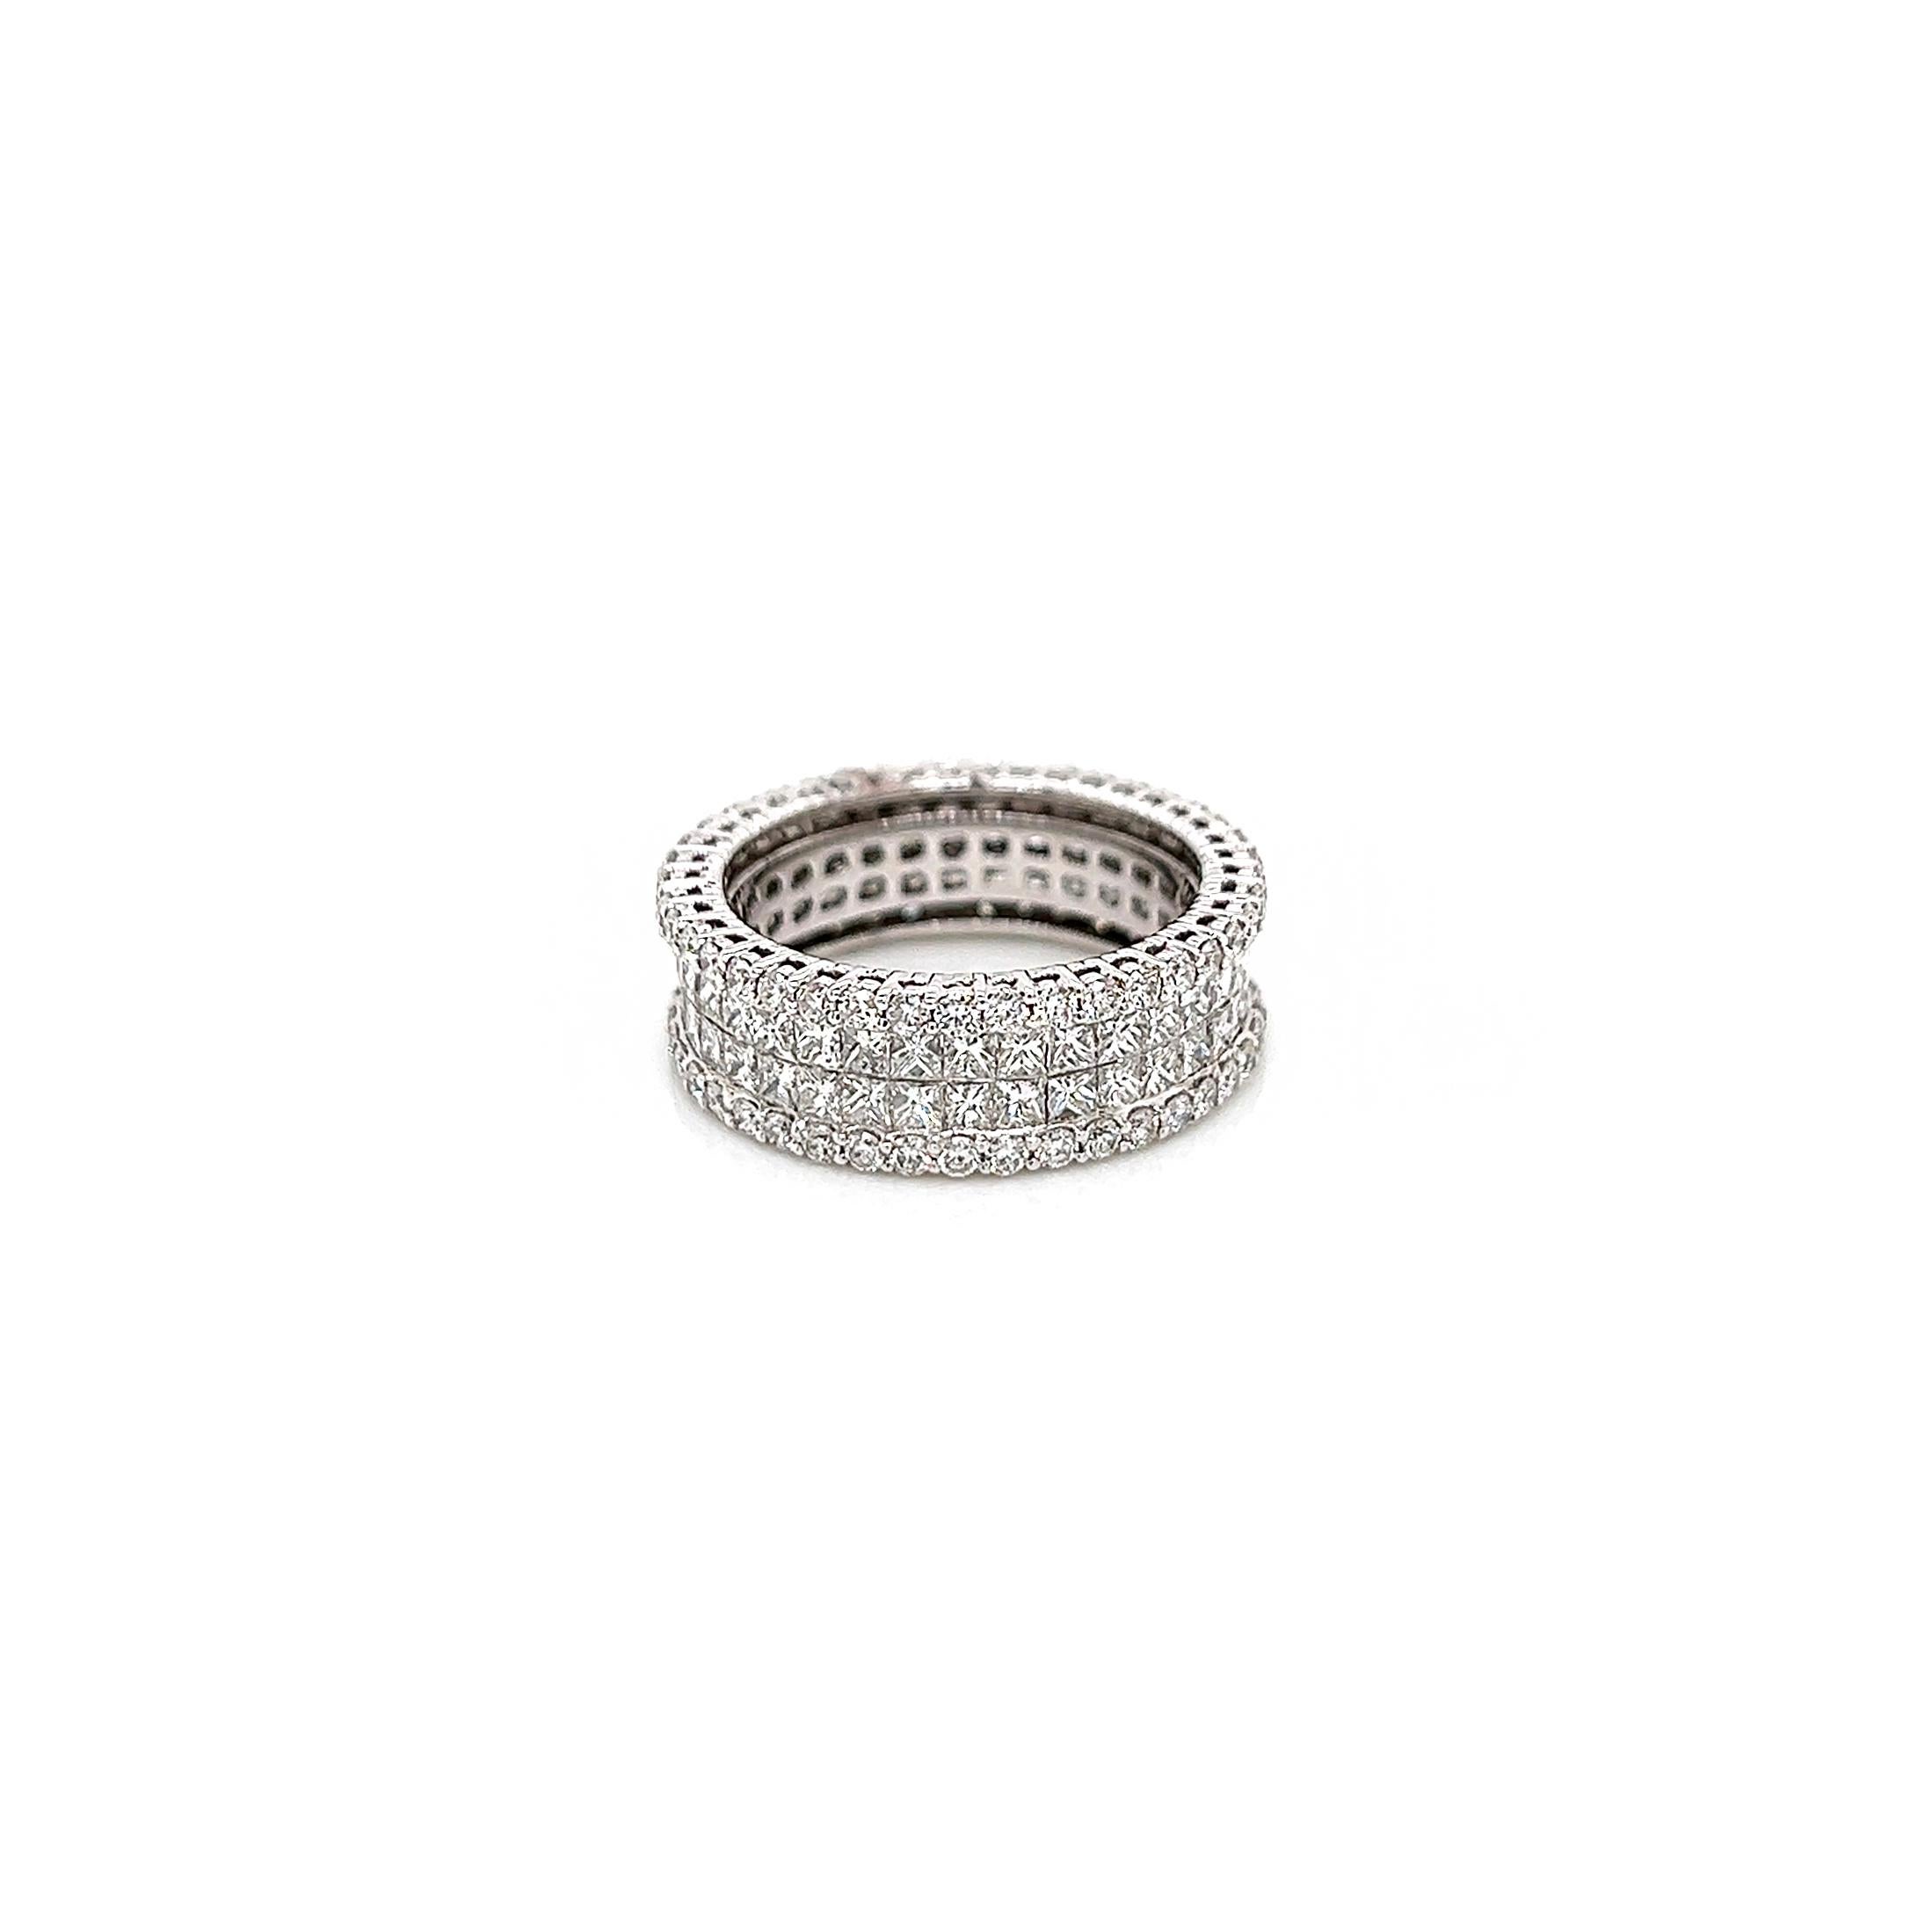 3.bracelet à diamants invisibles et sertis en griffe de 88 carats pour femme

-Type de métal : or blanc 18K
-diamants naturels à taille princesse de 2,60 carats sertis invisible
          ~F-G Color
          ~Clarté de l'ISP
-diamants naturels